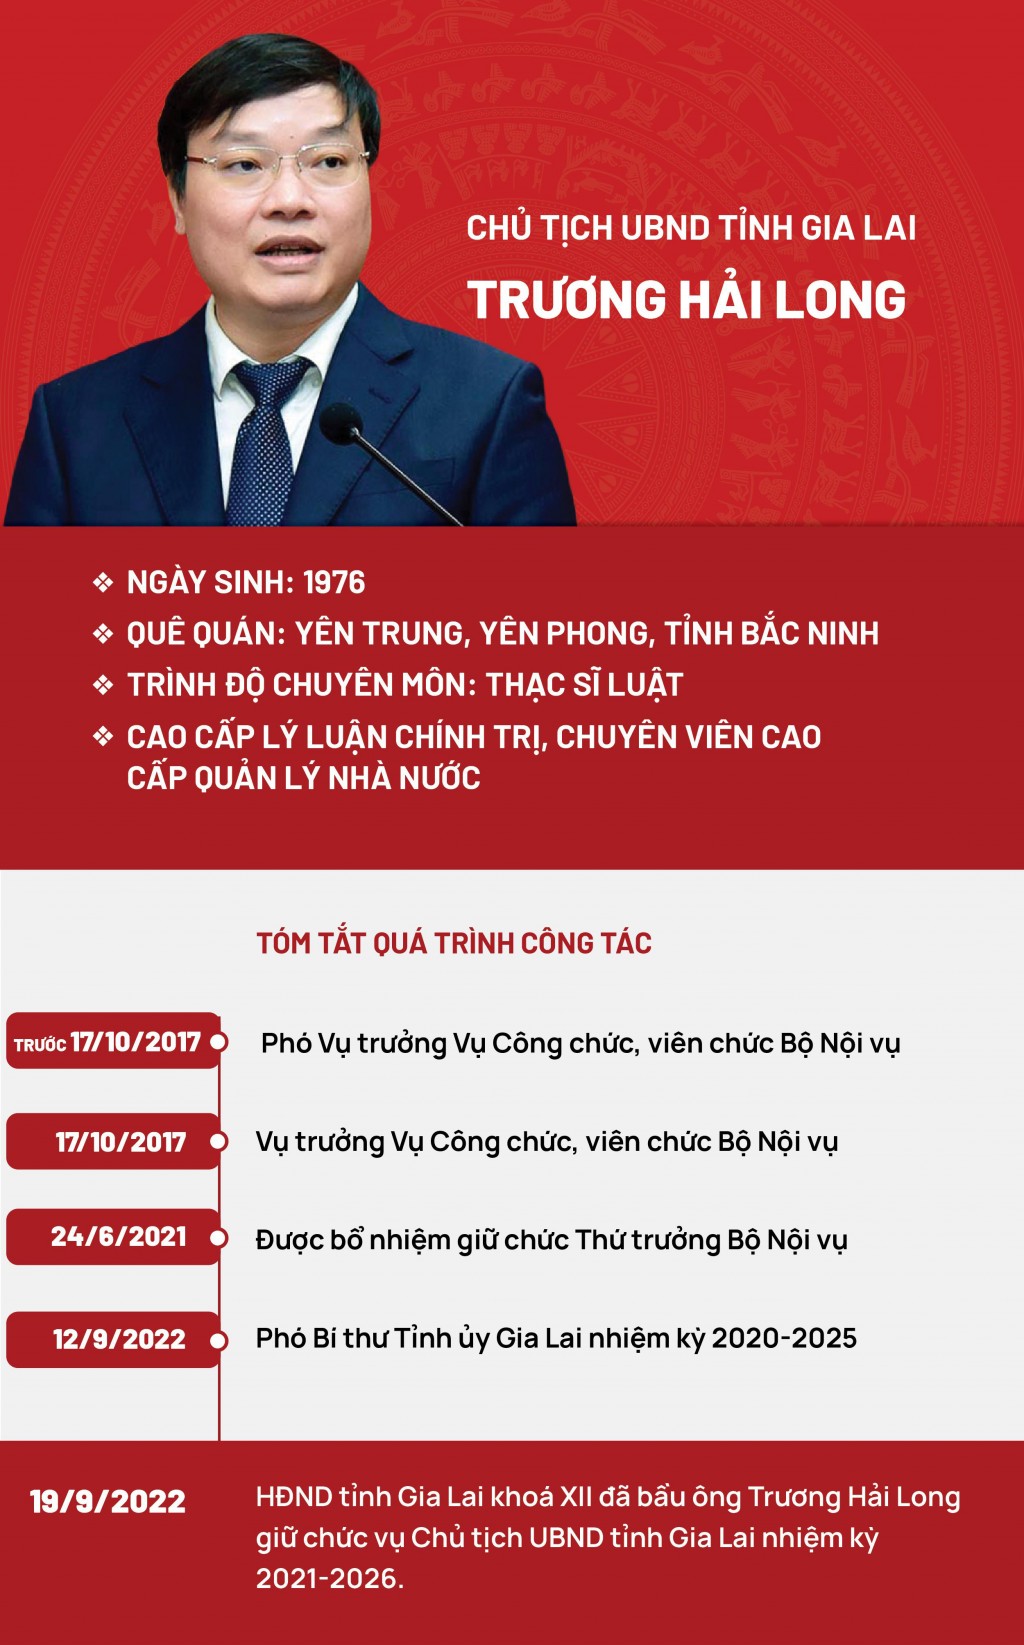 Chân dung tân Chủ tịch UBND tỉnh Gia Lai Trương Hải Long